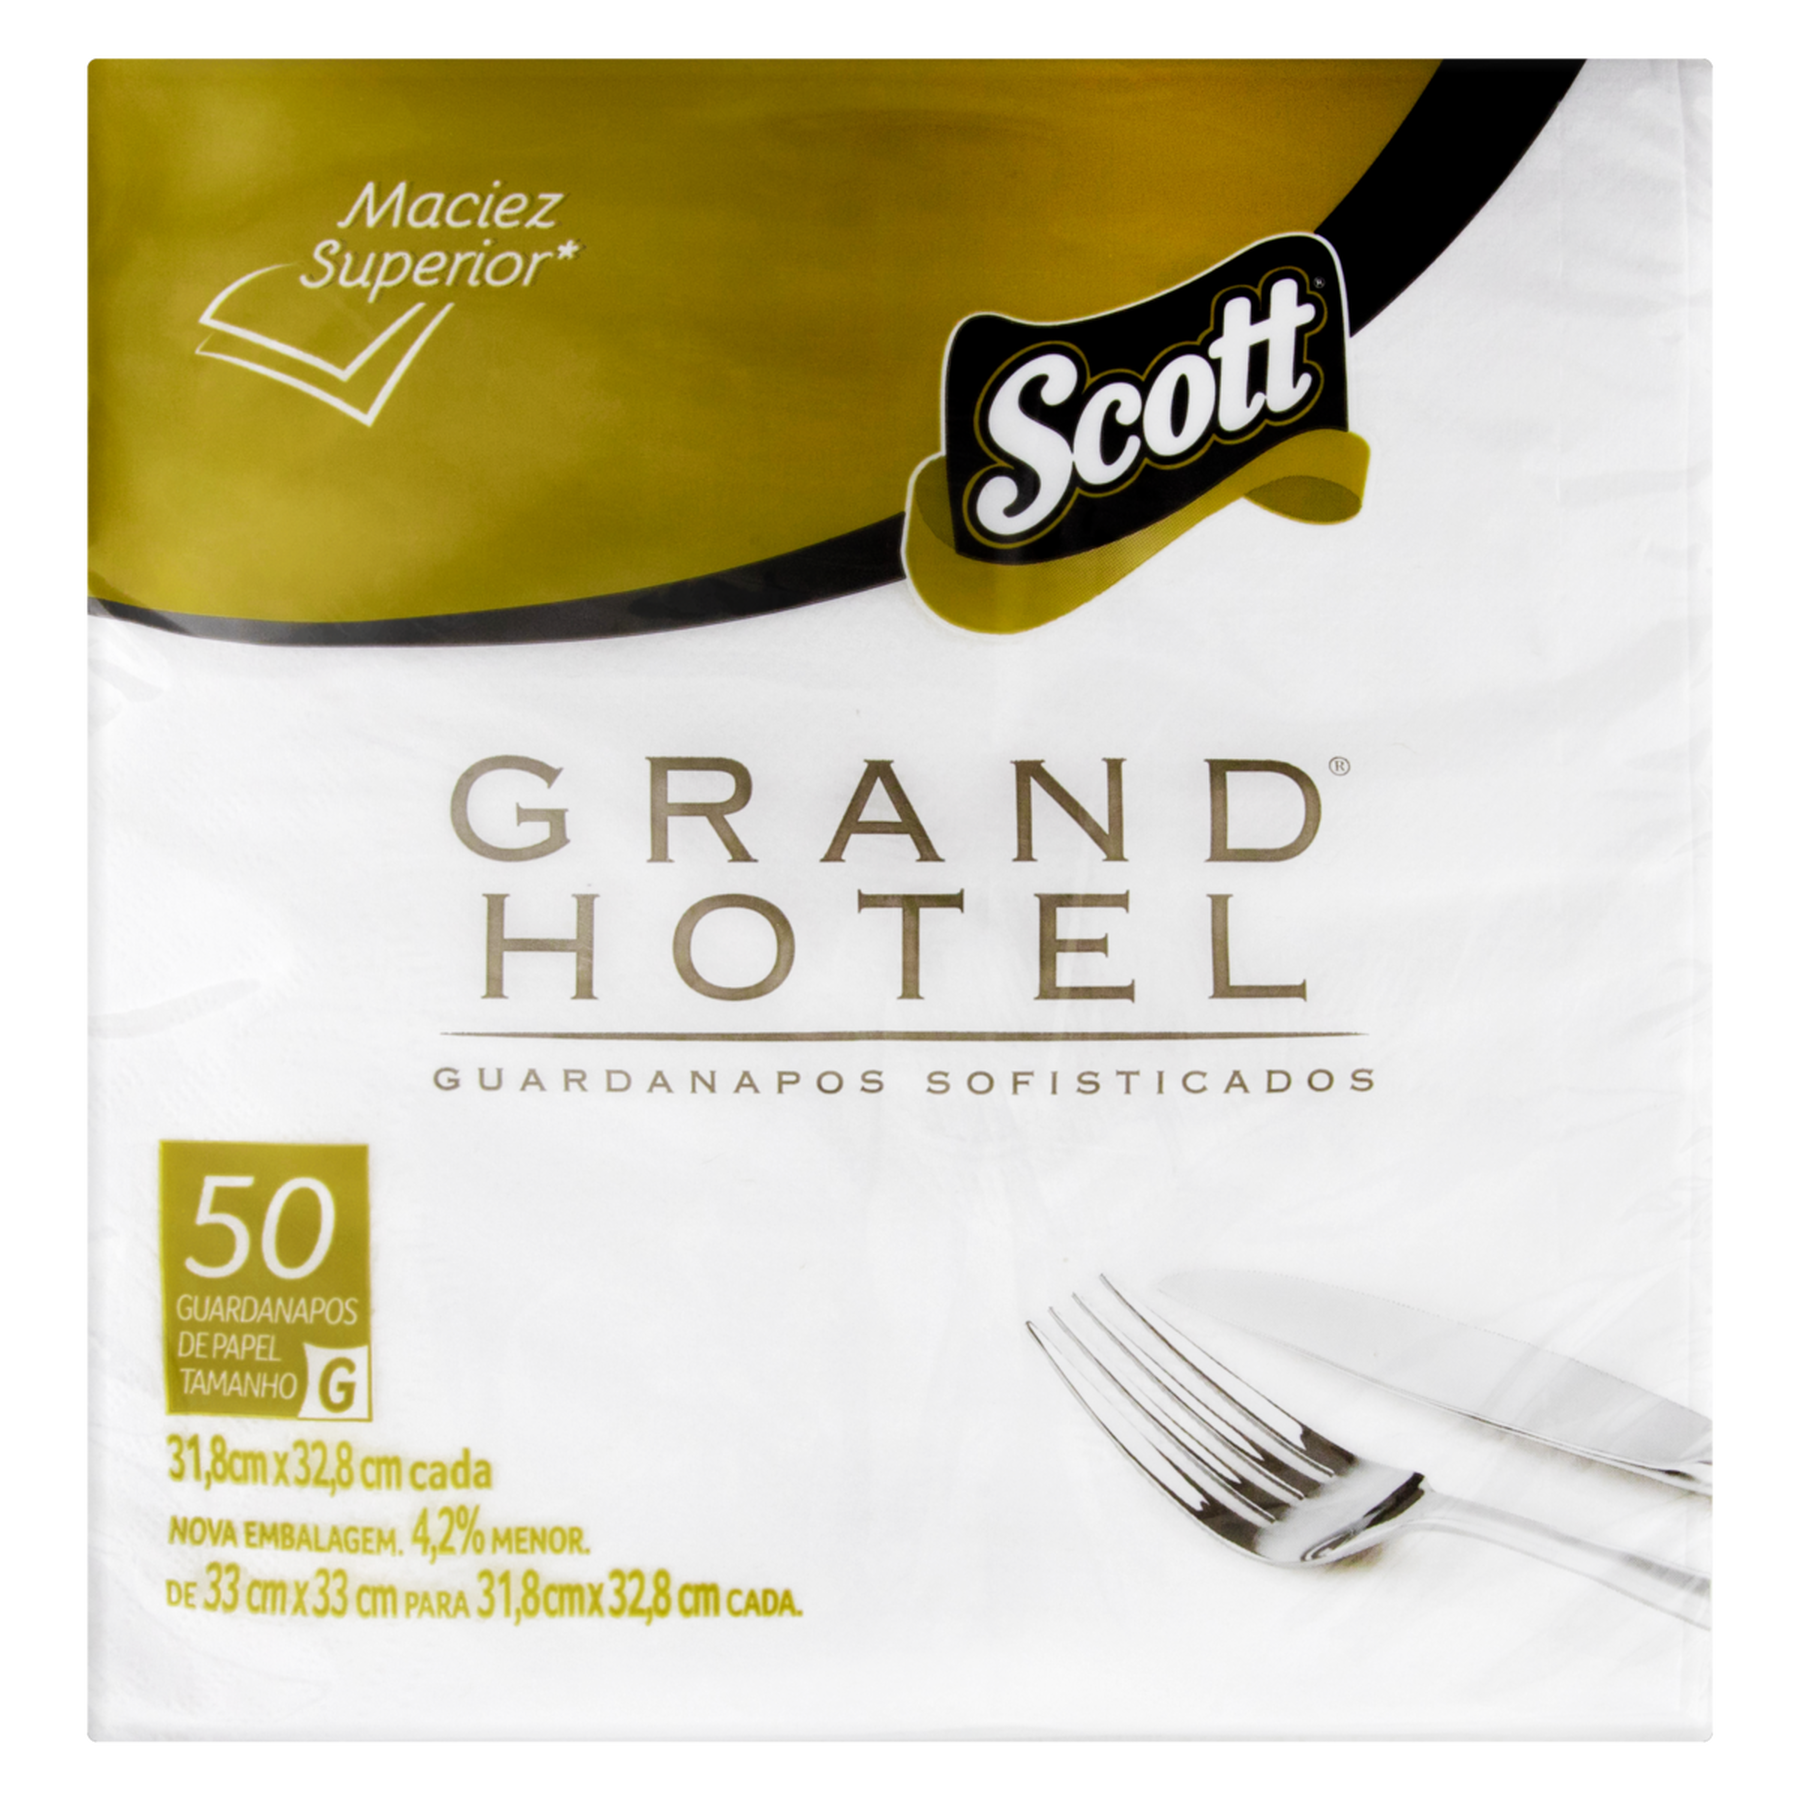 Guardanapo de Papel Folha Dupla Scott Grand Hotel 31,8cm x 32,8cm Pacote C/50 Unidades